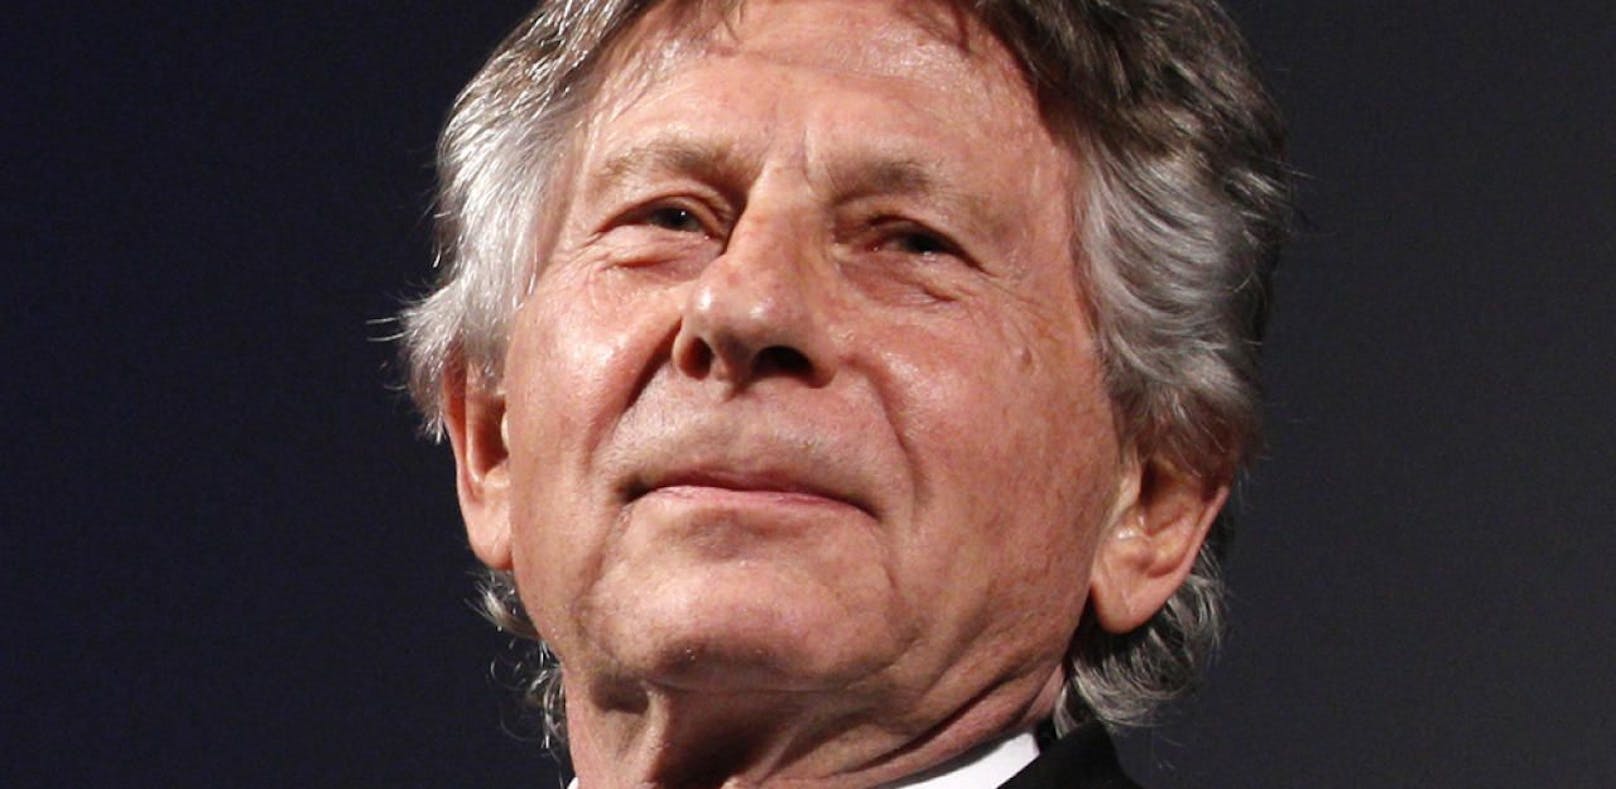 Opfer von Roman Polanski fordert Ende von Verfahren